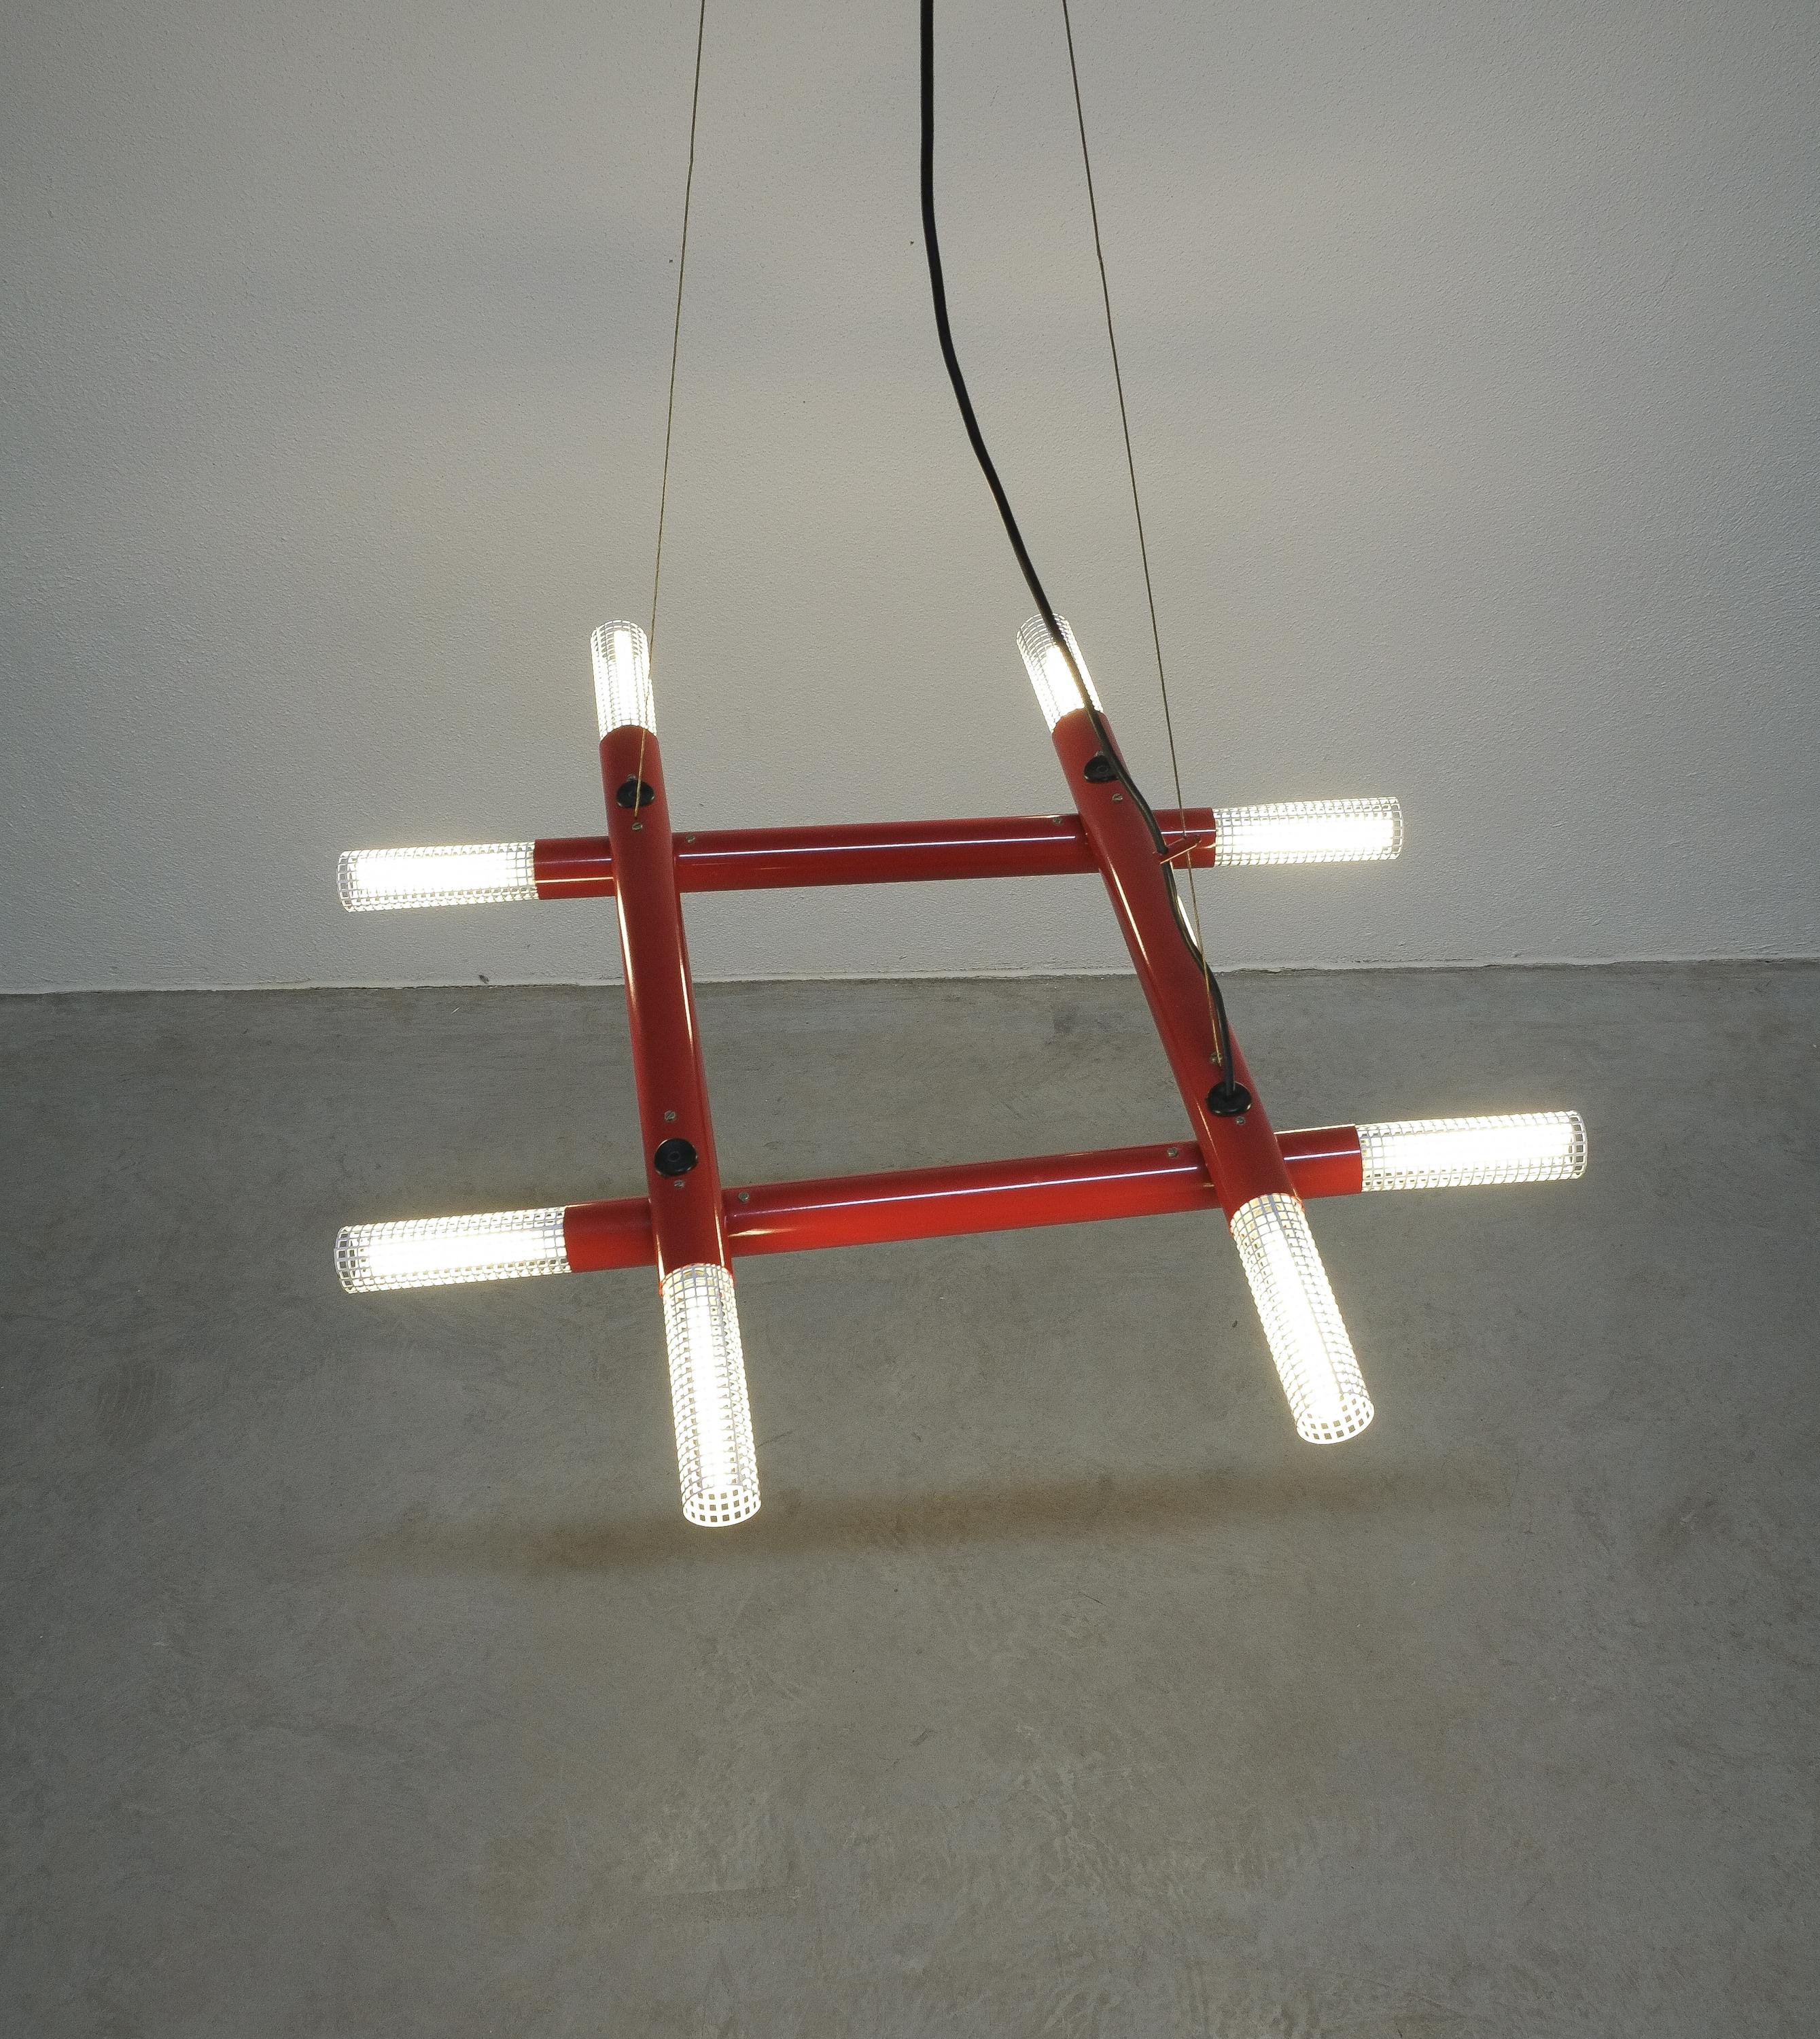 Lustre atomique postmoderne en métal rouge, vers 1980

Lustre architectural contemporain des années 1980, Italie. Il s'illumine grâce à 8 ampoules cachées derrière des diffuseurs en métal perforé blanc. Il peut être réglé en faisant pivoter les